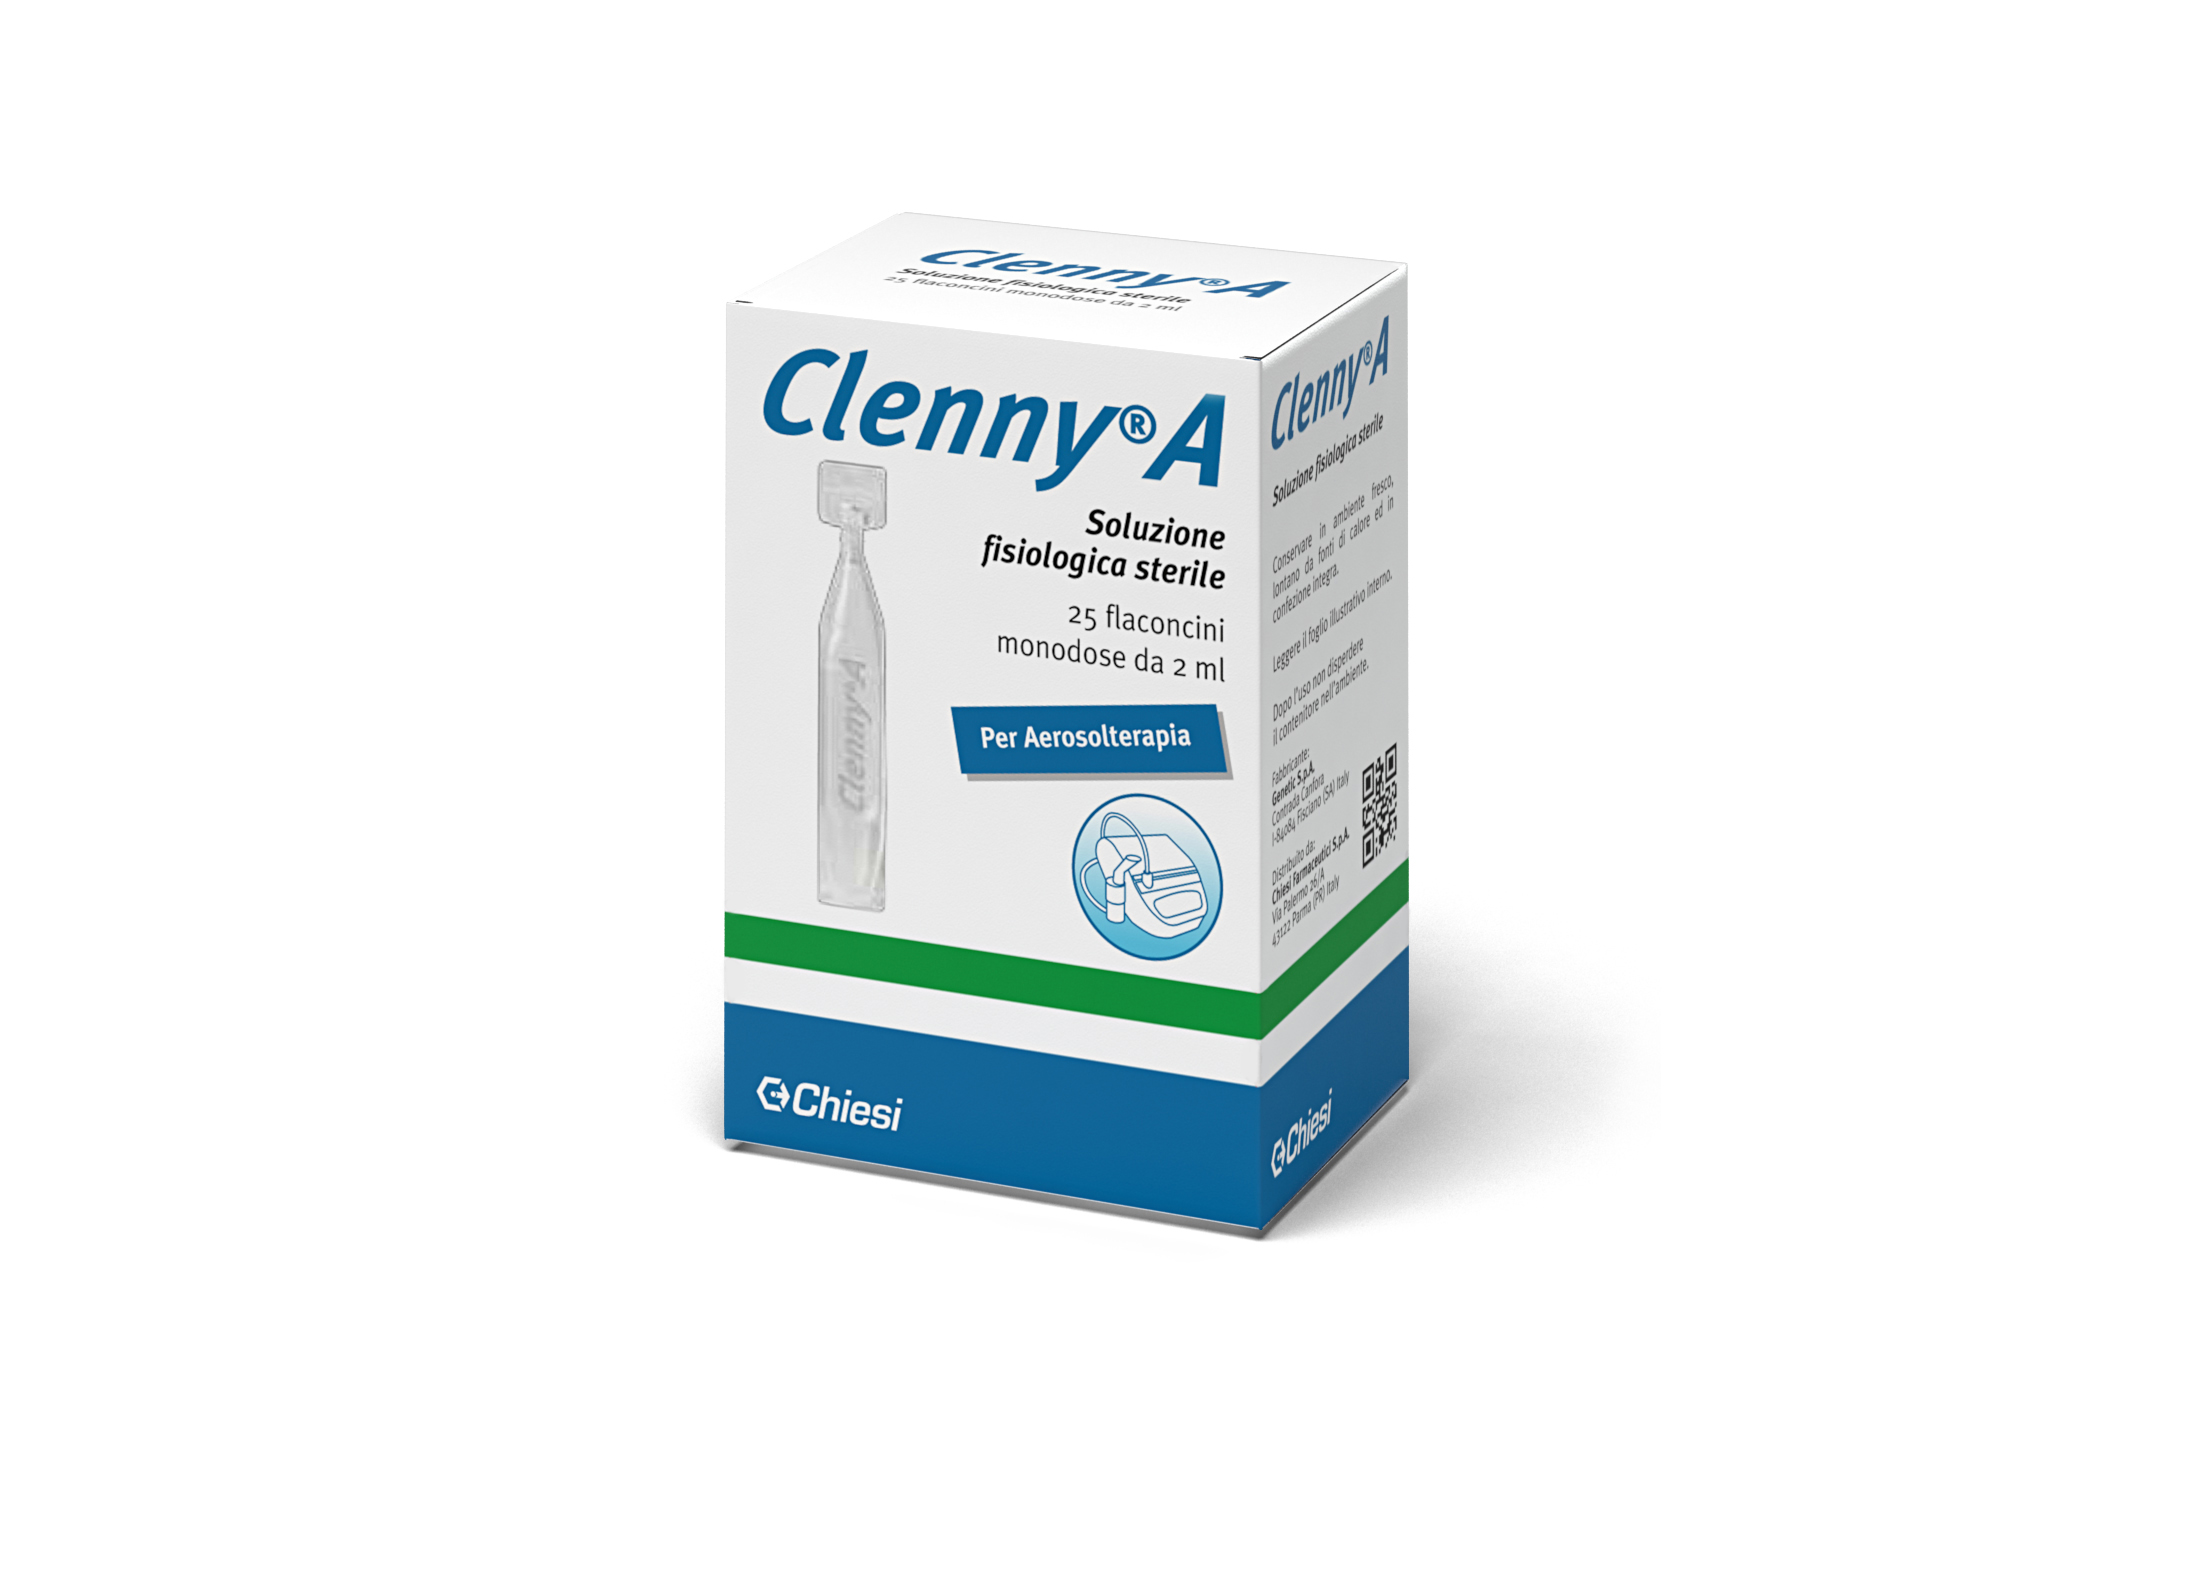 Immagine della confezione di Clenny a flaconcini monodose, dispositivo medico di Chiesi Farmaceutici S.p.A.